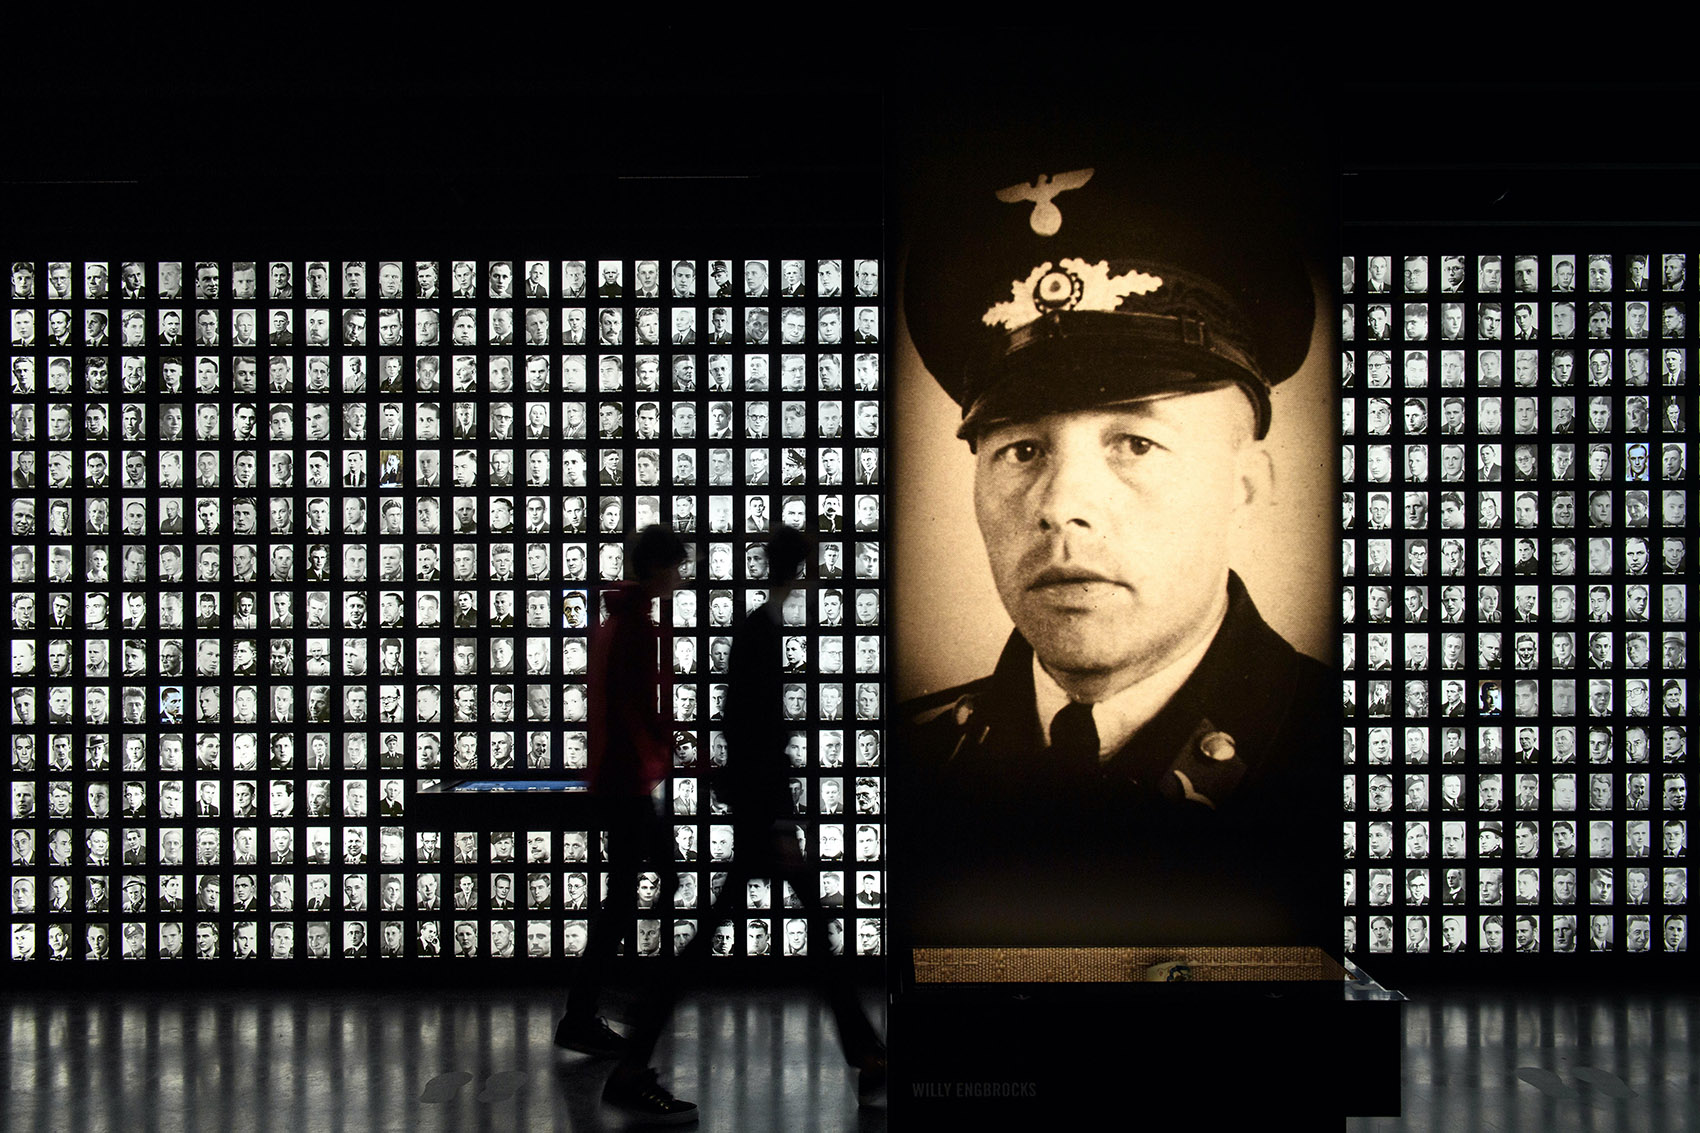 阿默斯福特集中营国家纪念馆永久展览，荷兰/讲述故事，反思战争-15